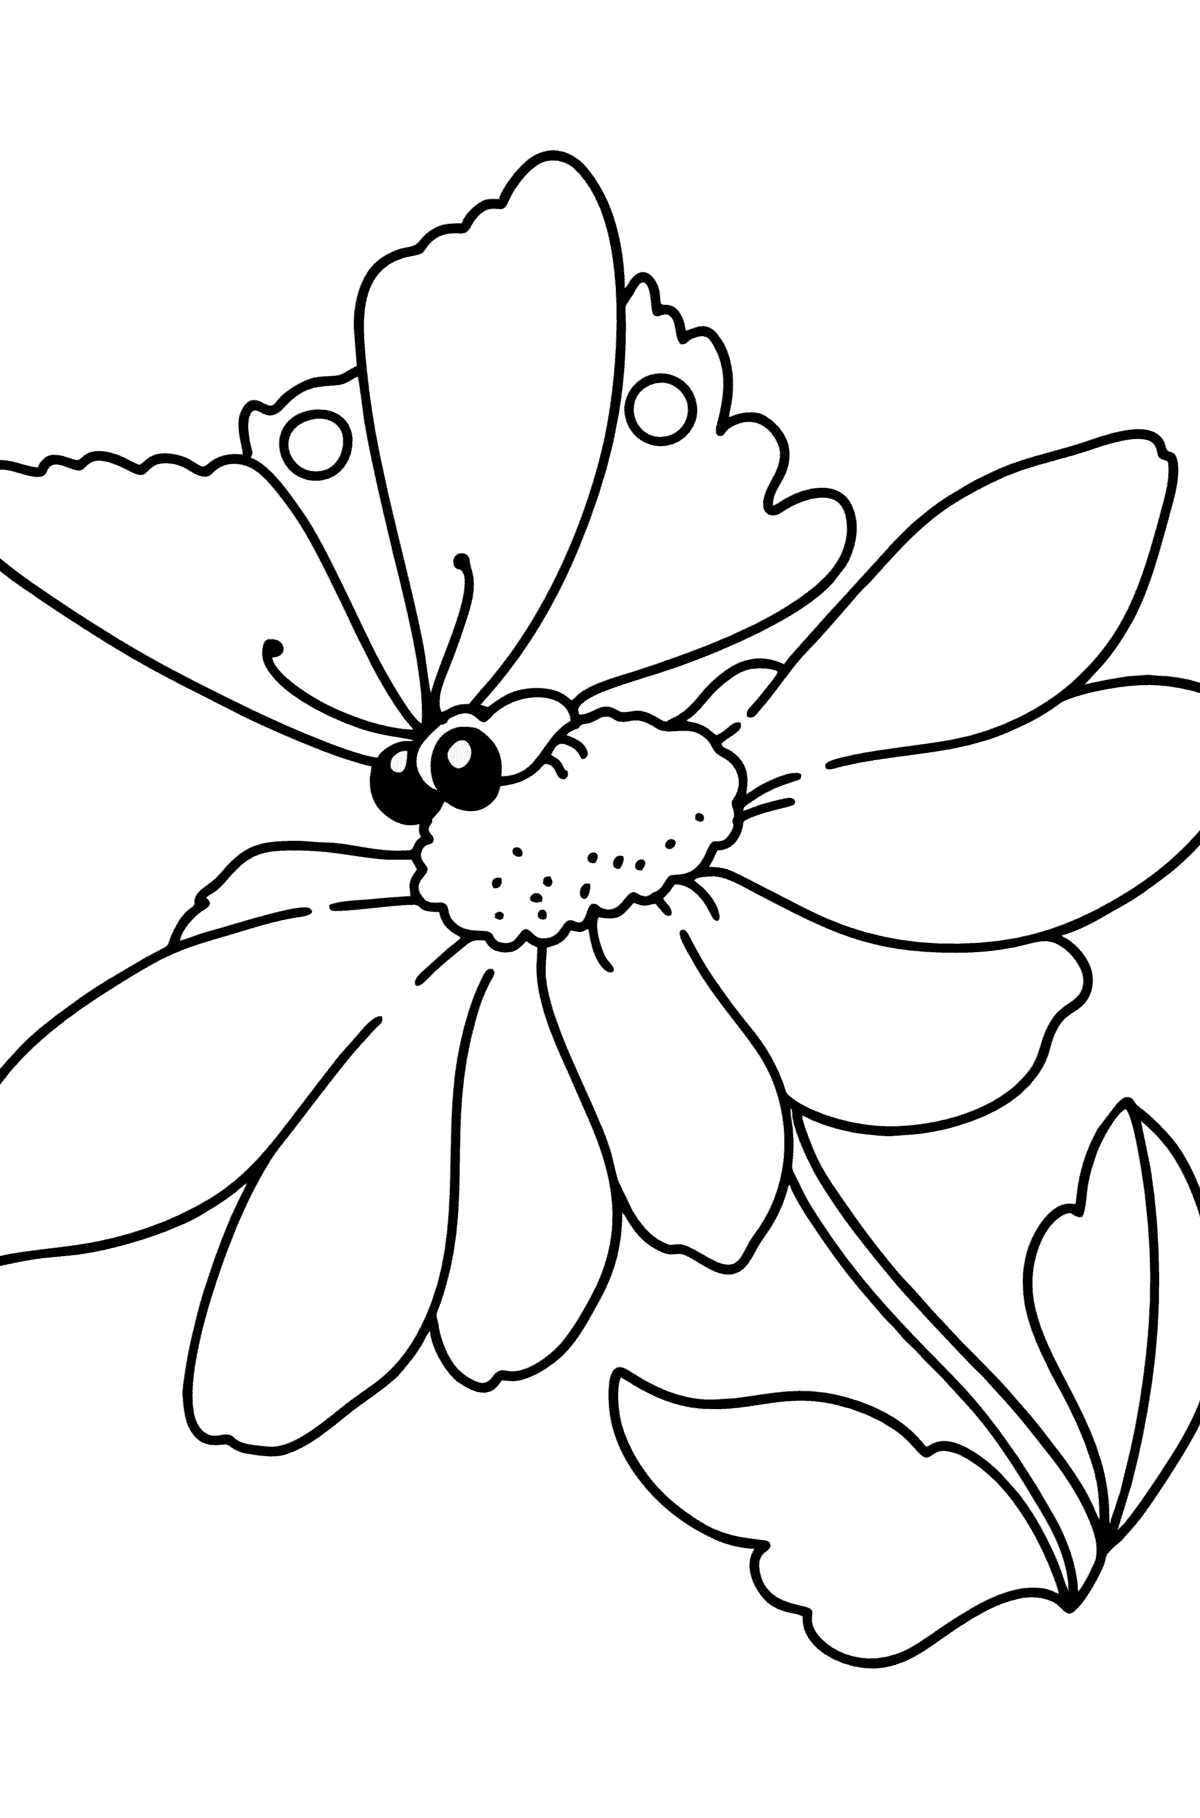 Раскраска Лето - Цветы и Бабочка - Картинки для Детей